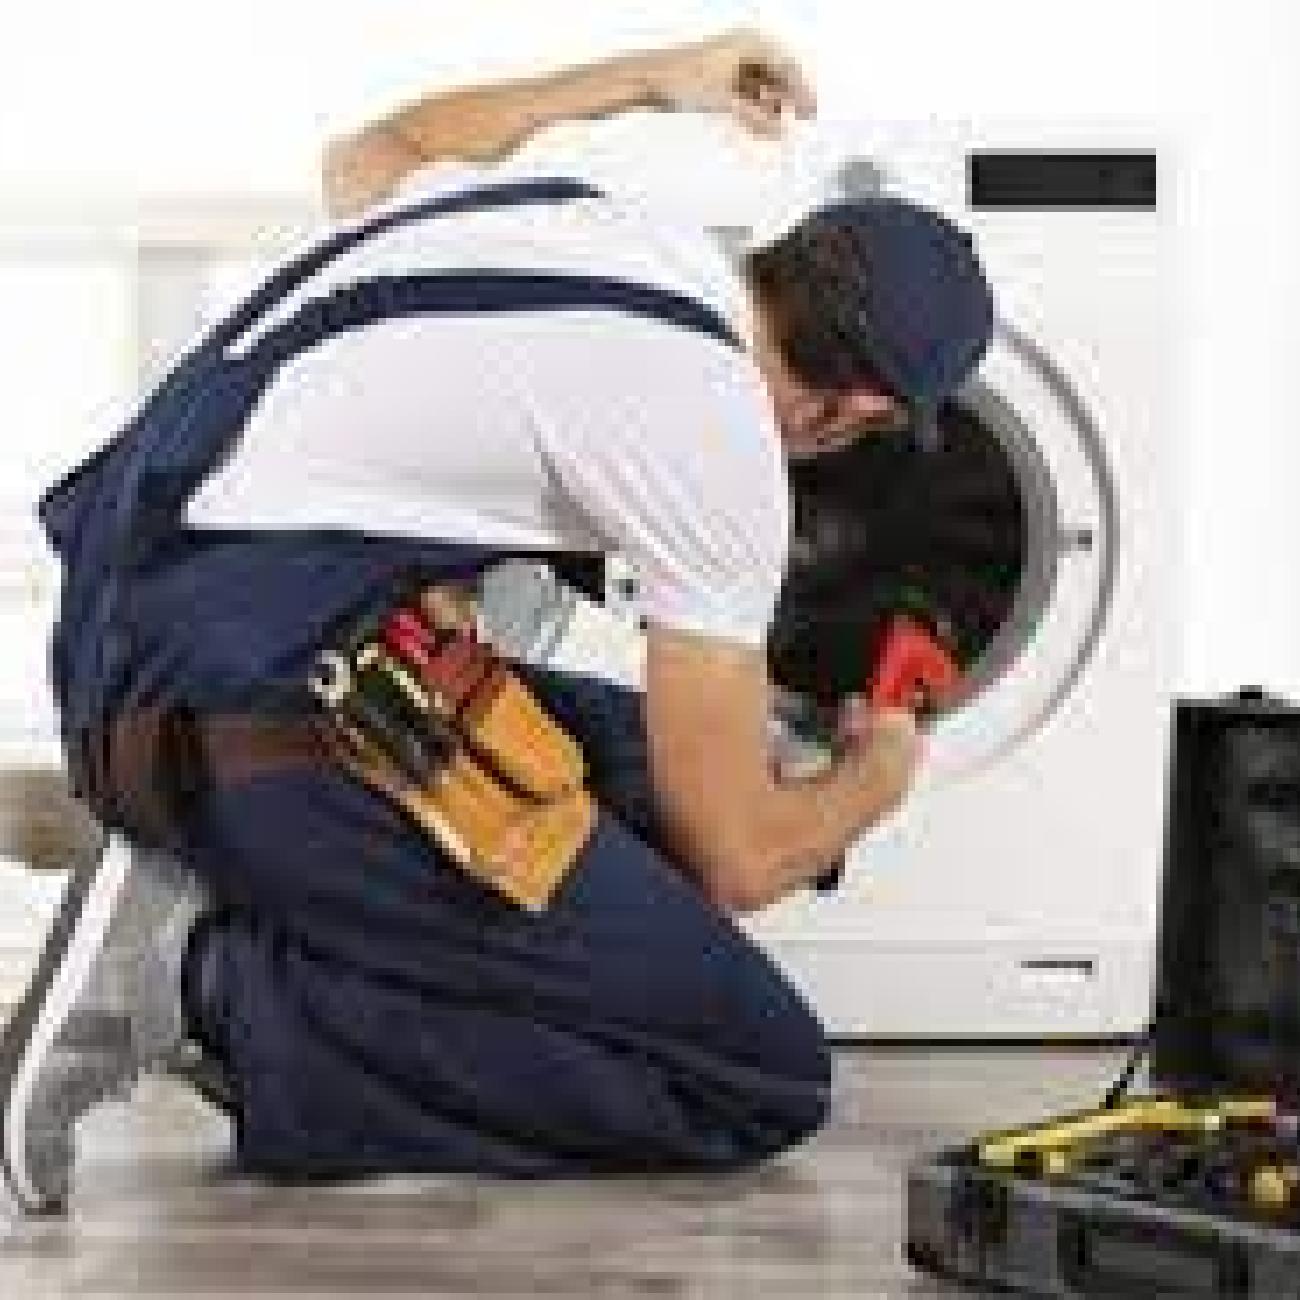 Washing Machine Repair Service in Mumbai